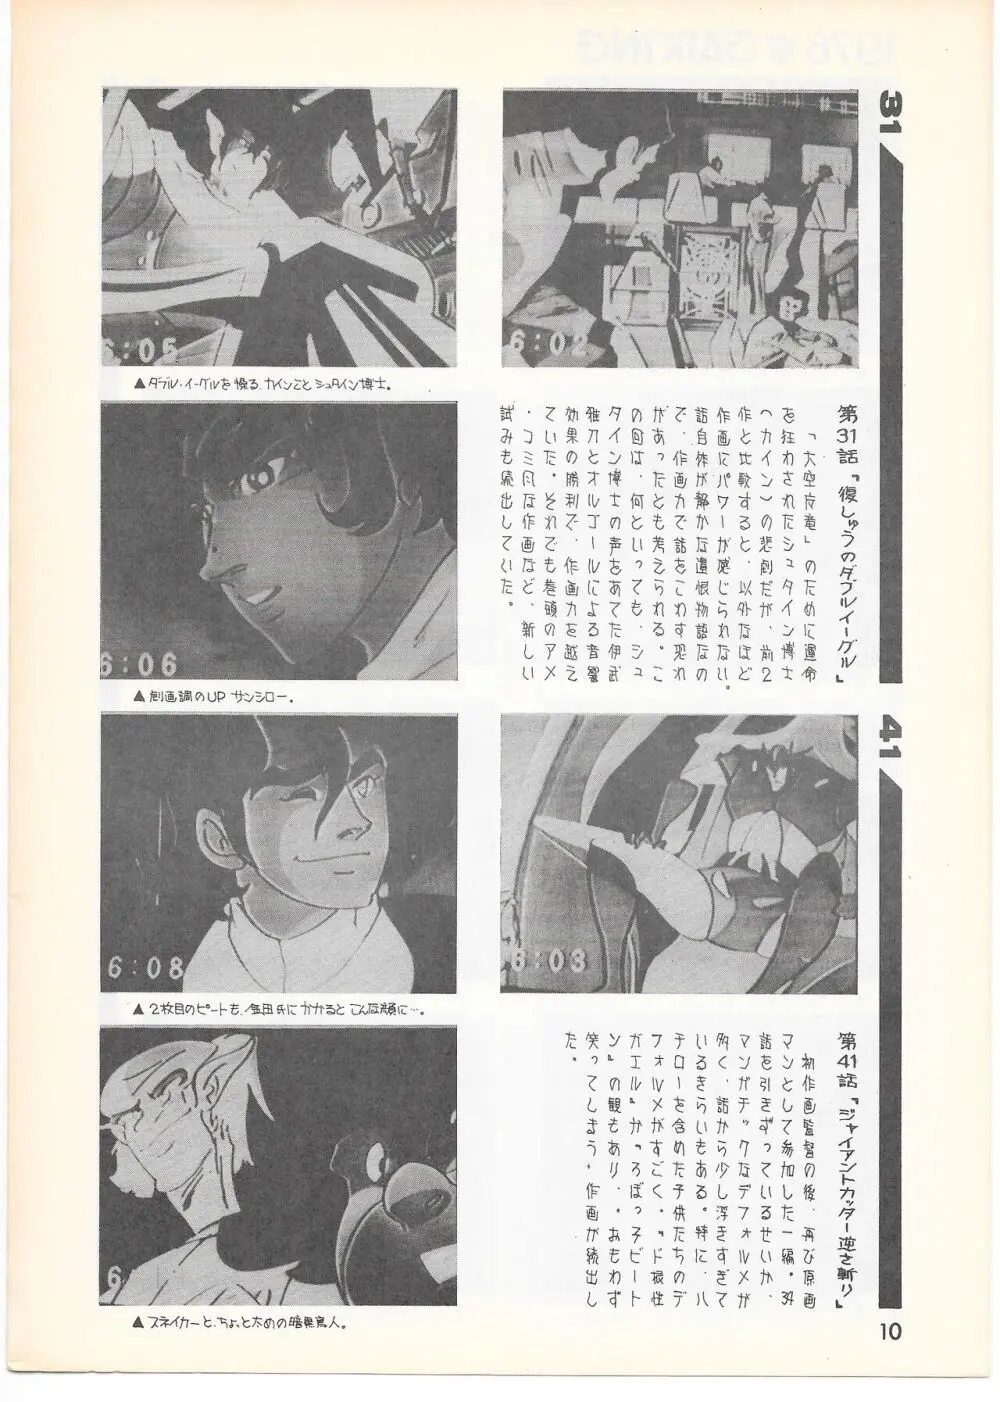 THE ANIMATOR 1 金田伊功特集号 9ページ